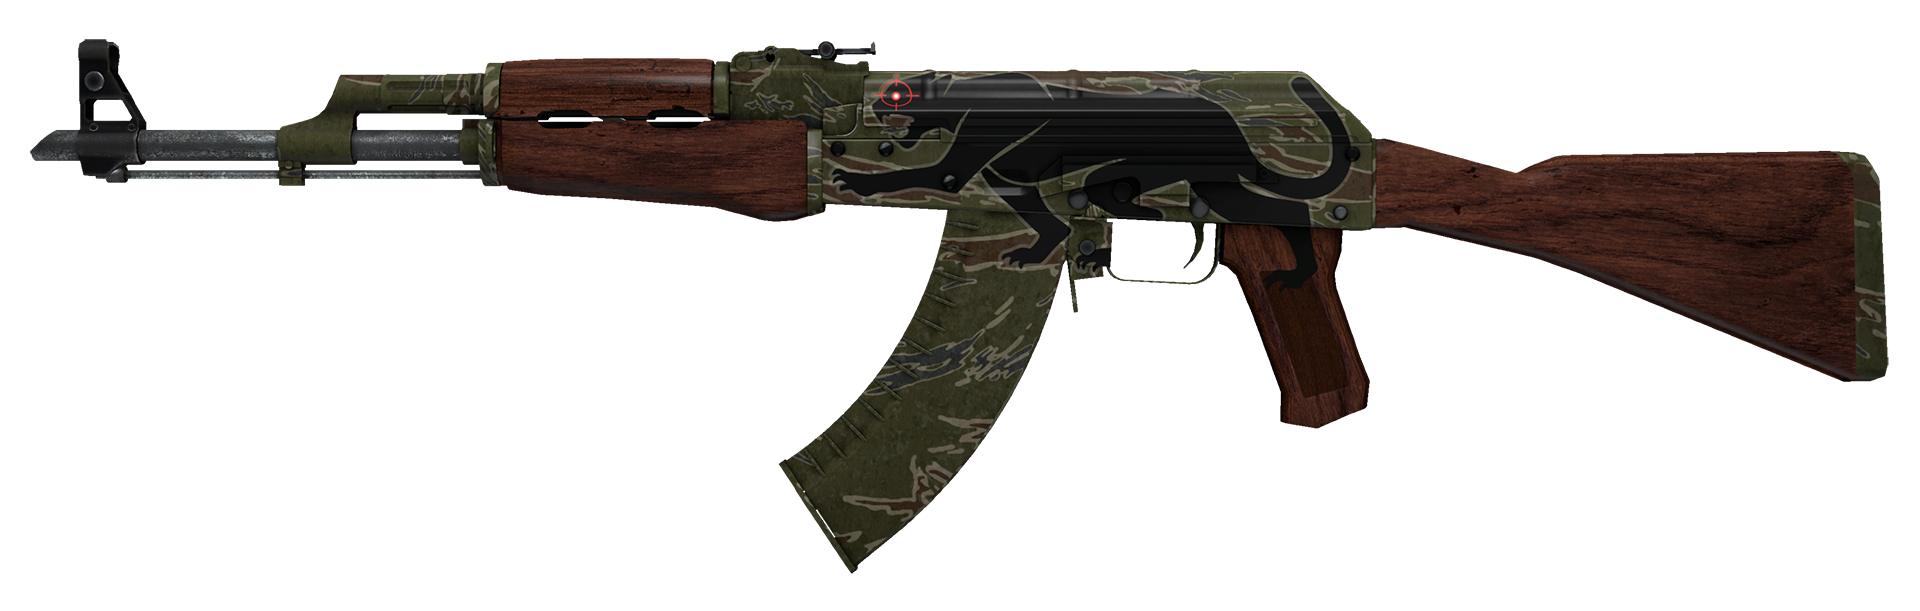 AK-47 Jaguar Large Rendering